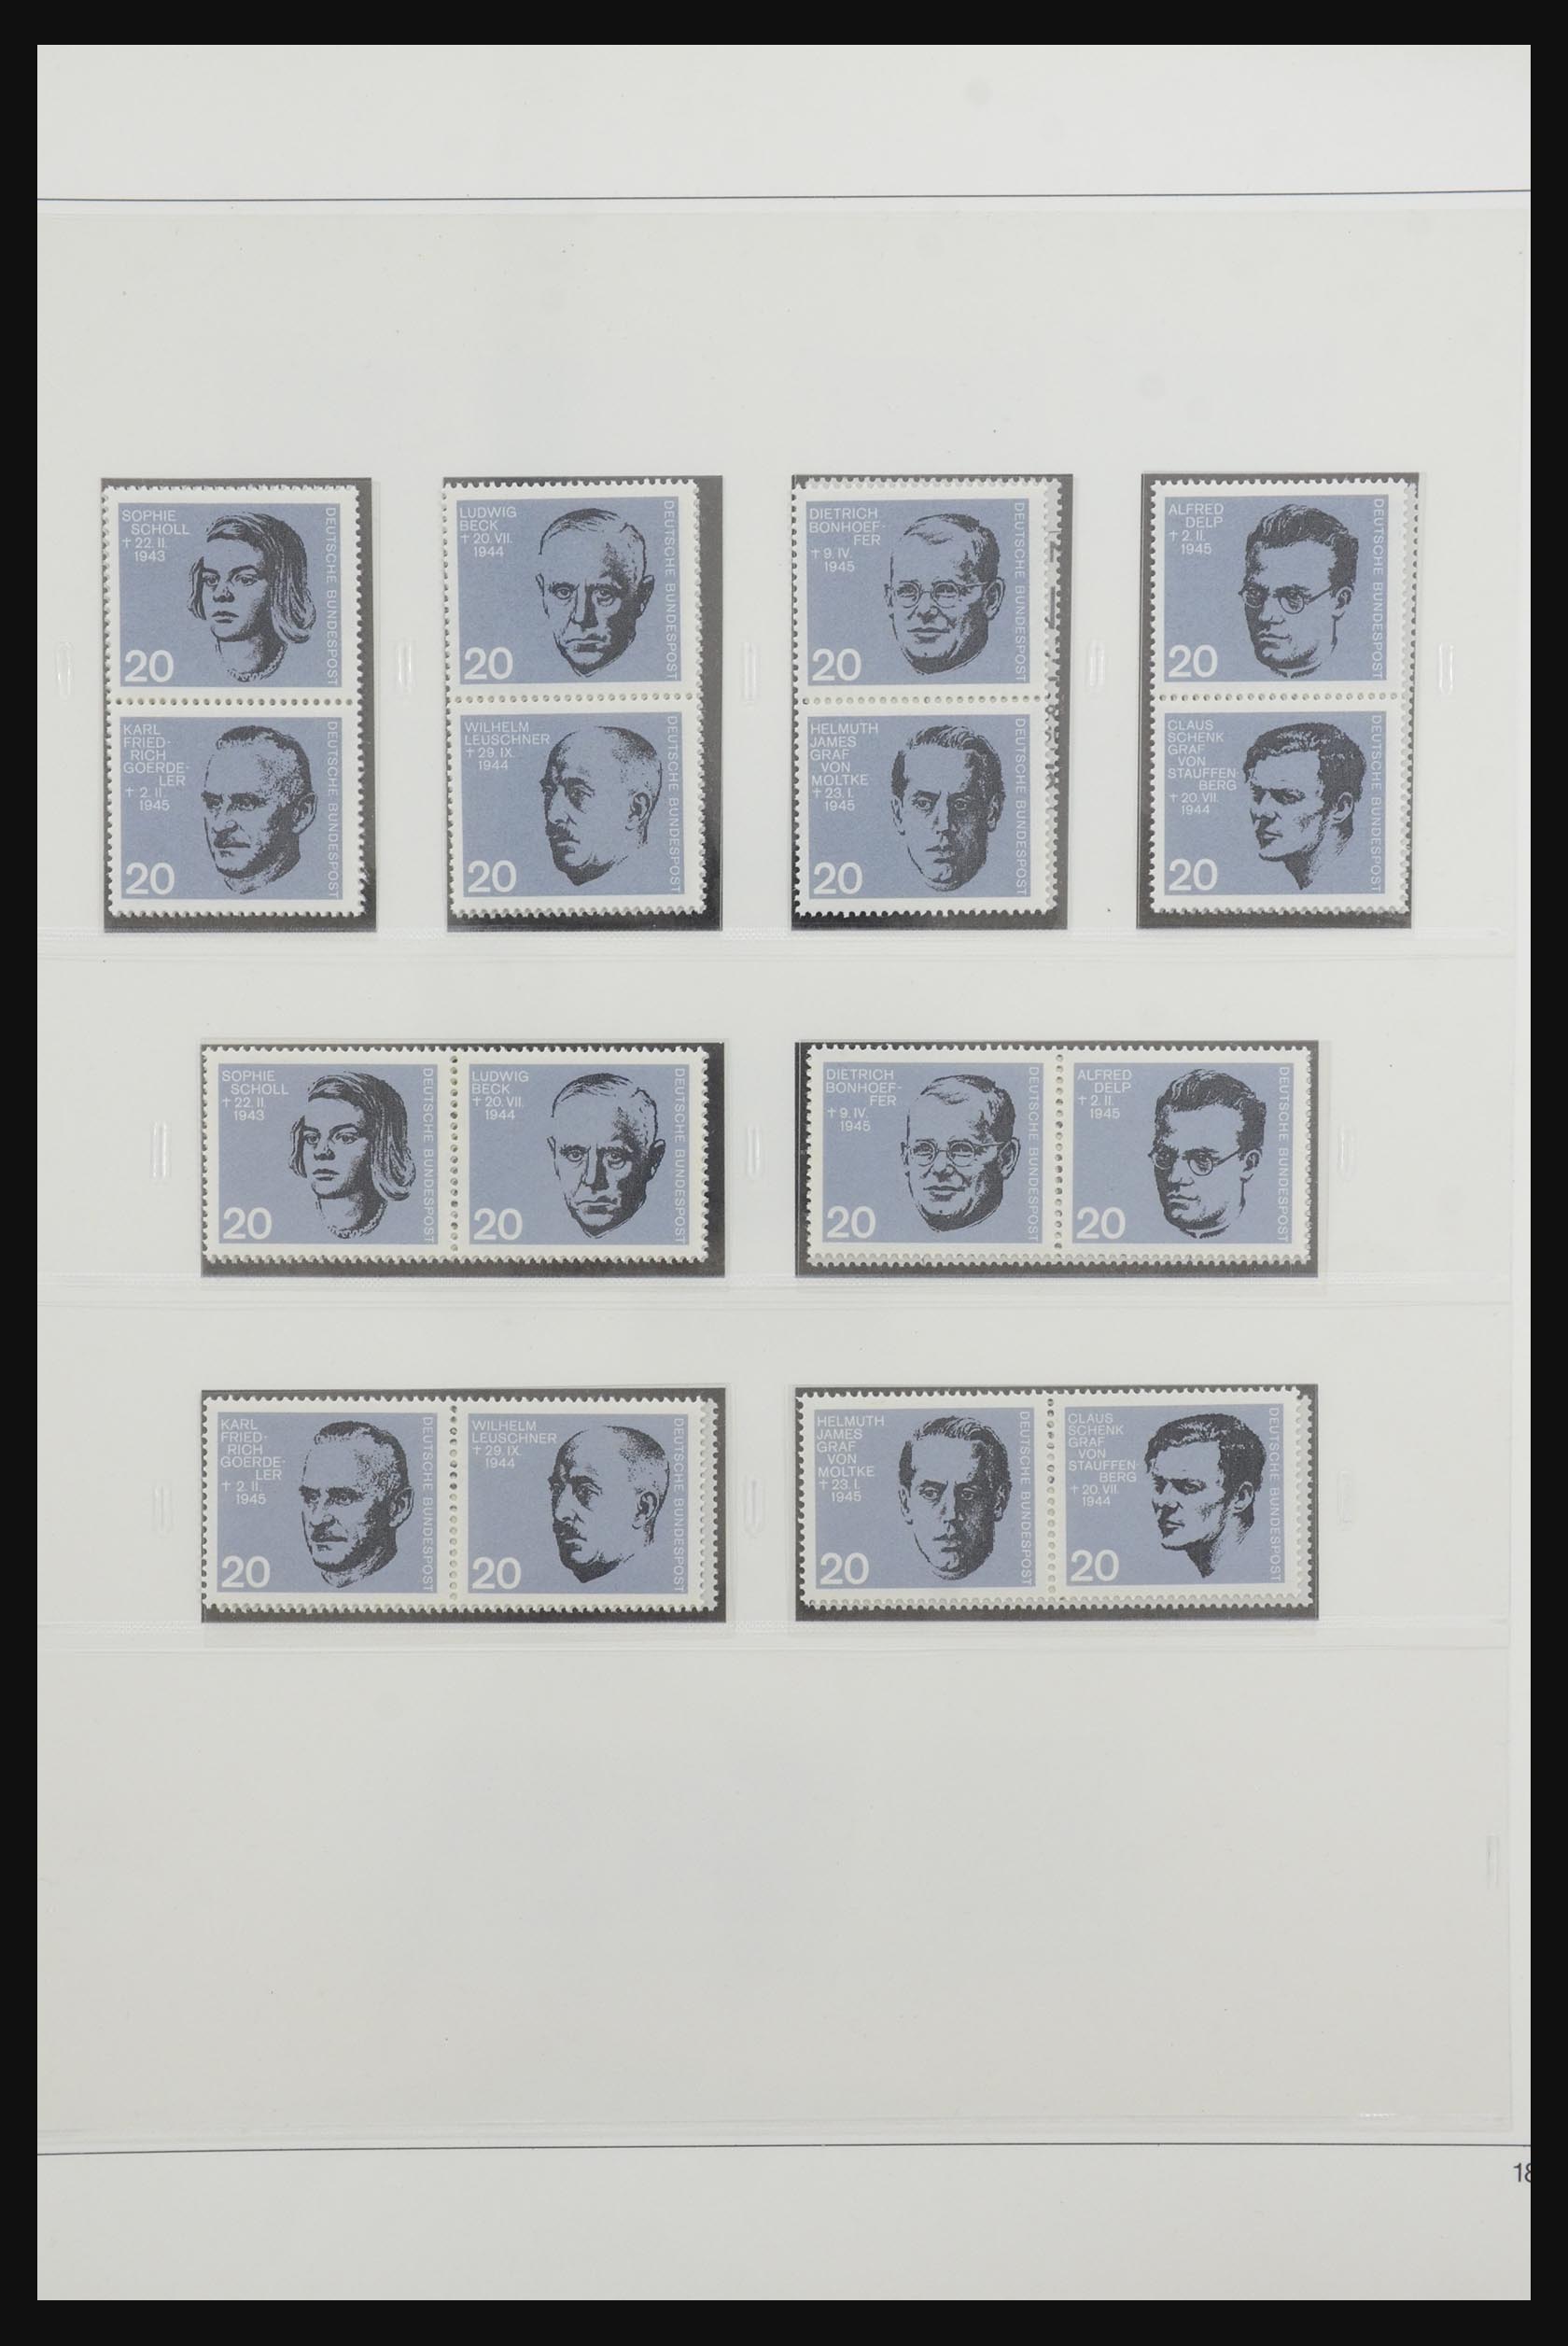 31842 023 - 31842 Bundespost combinations 1951-2003.